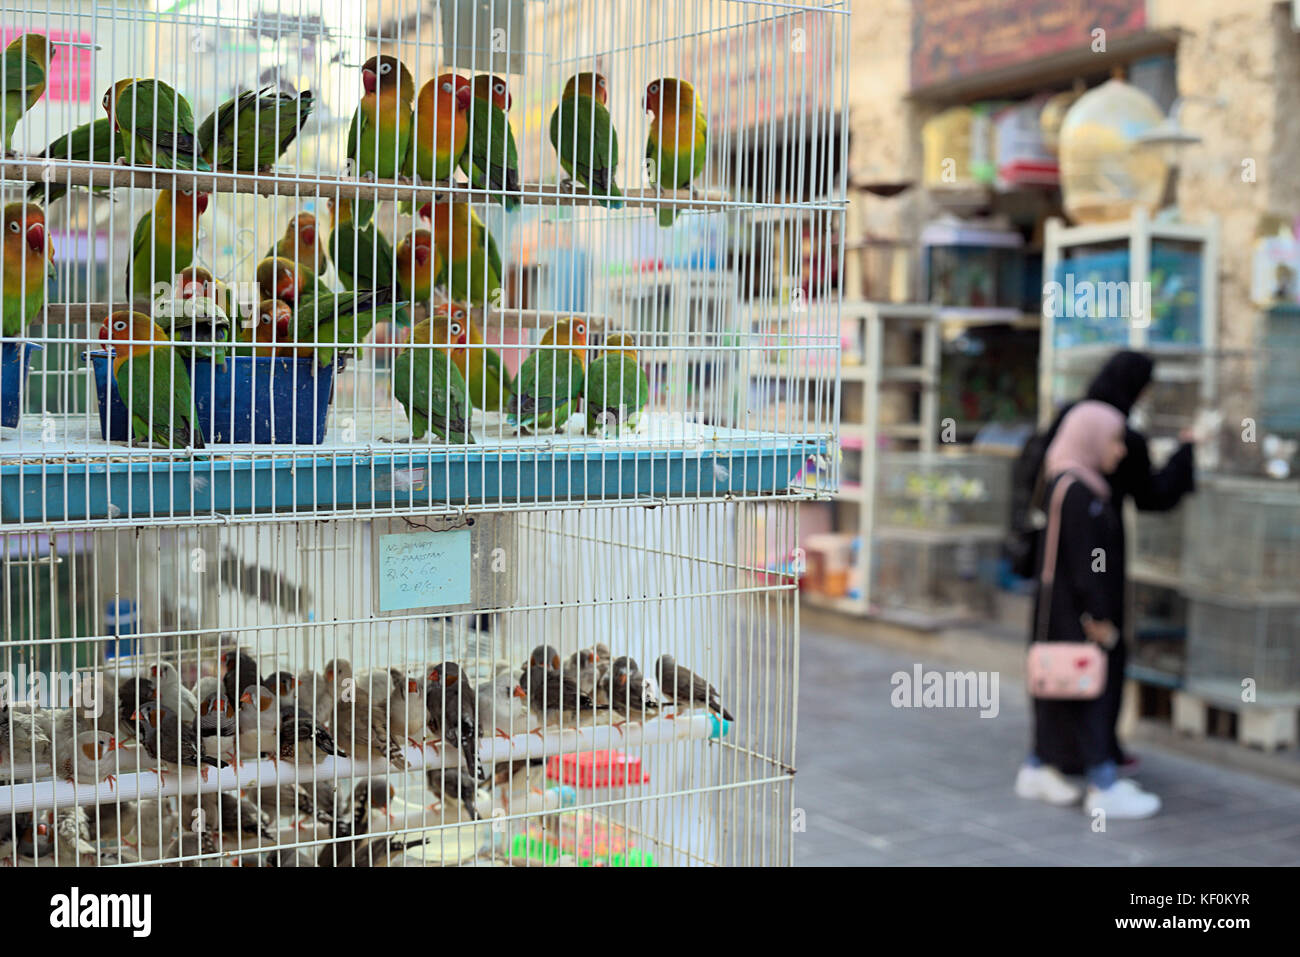 Souq Waqif, Doha, Katar - 23. Oktober 2017: die Pet Shop Bereich der Souq Waqif in Katar, Saudi-Arabien. Selektive konzentrieren, die Käufer nicht identifizierbar sind. Stockfoto